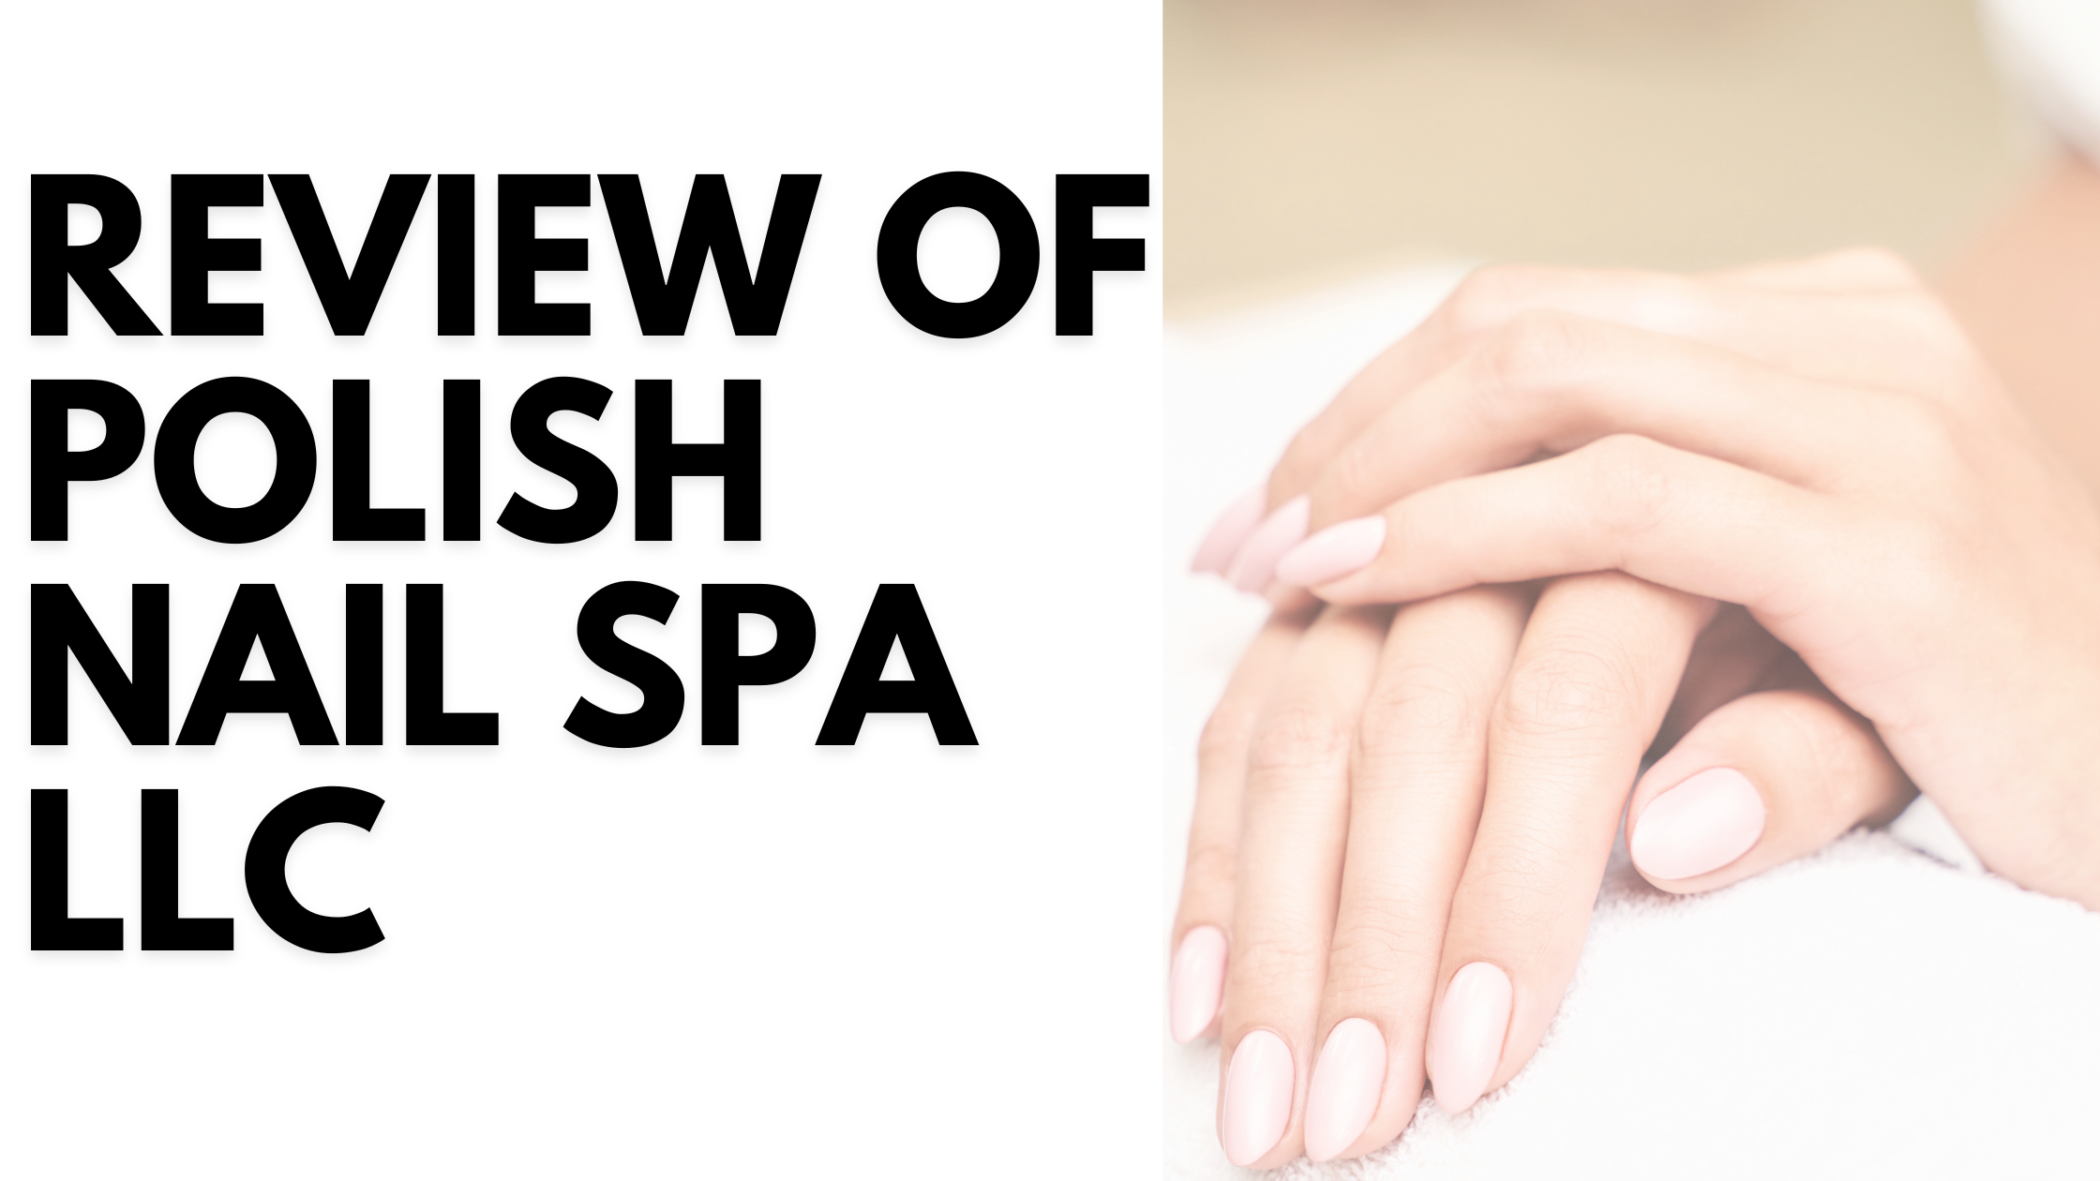 Review of Polish Nail Spa LLC